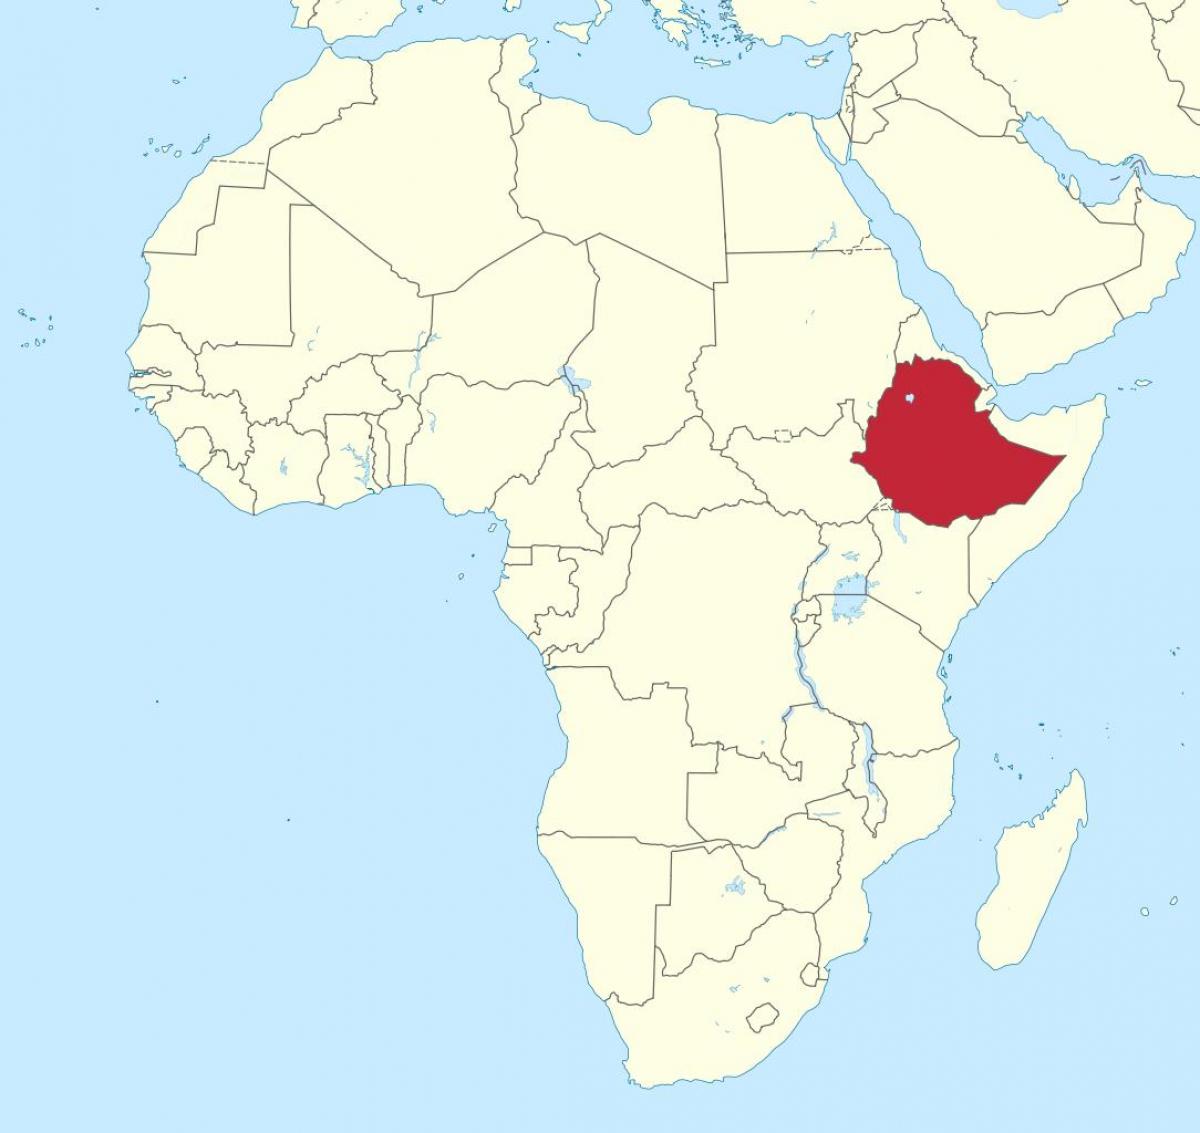 karta afrike pokazuje Etiopije